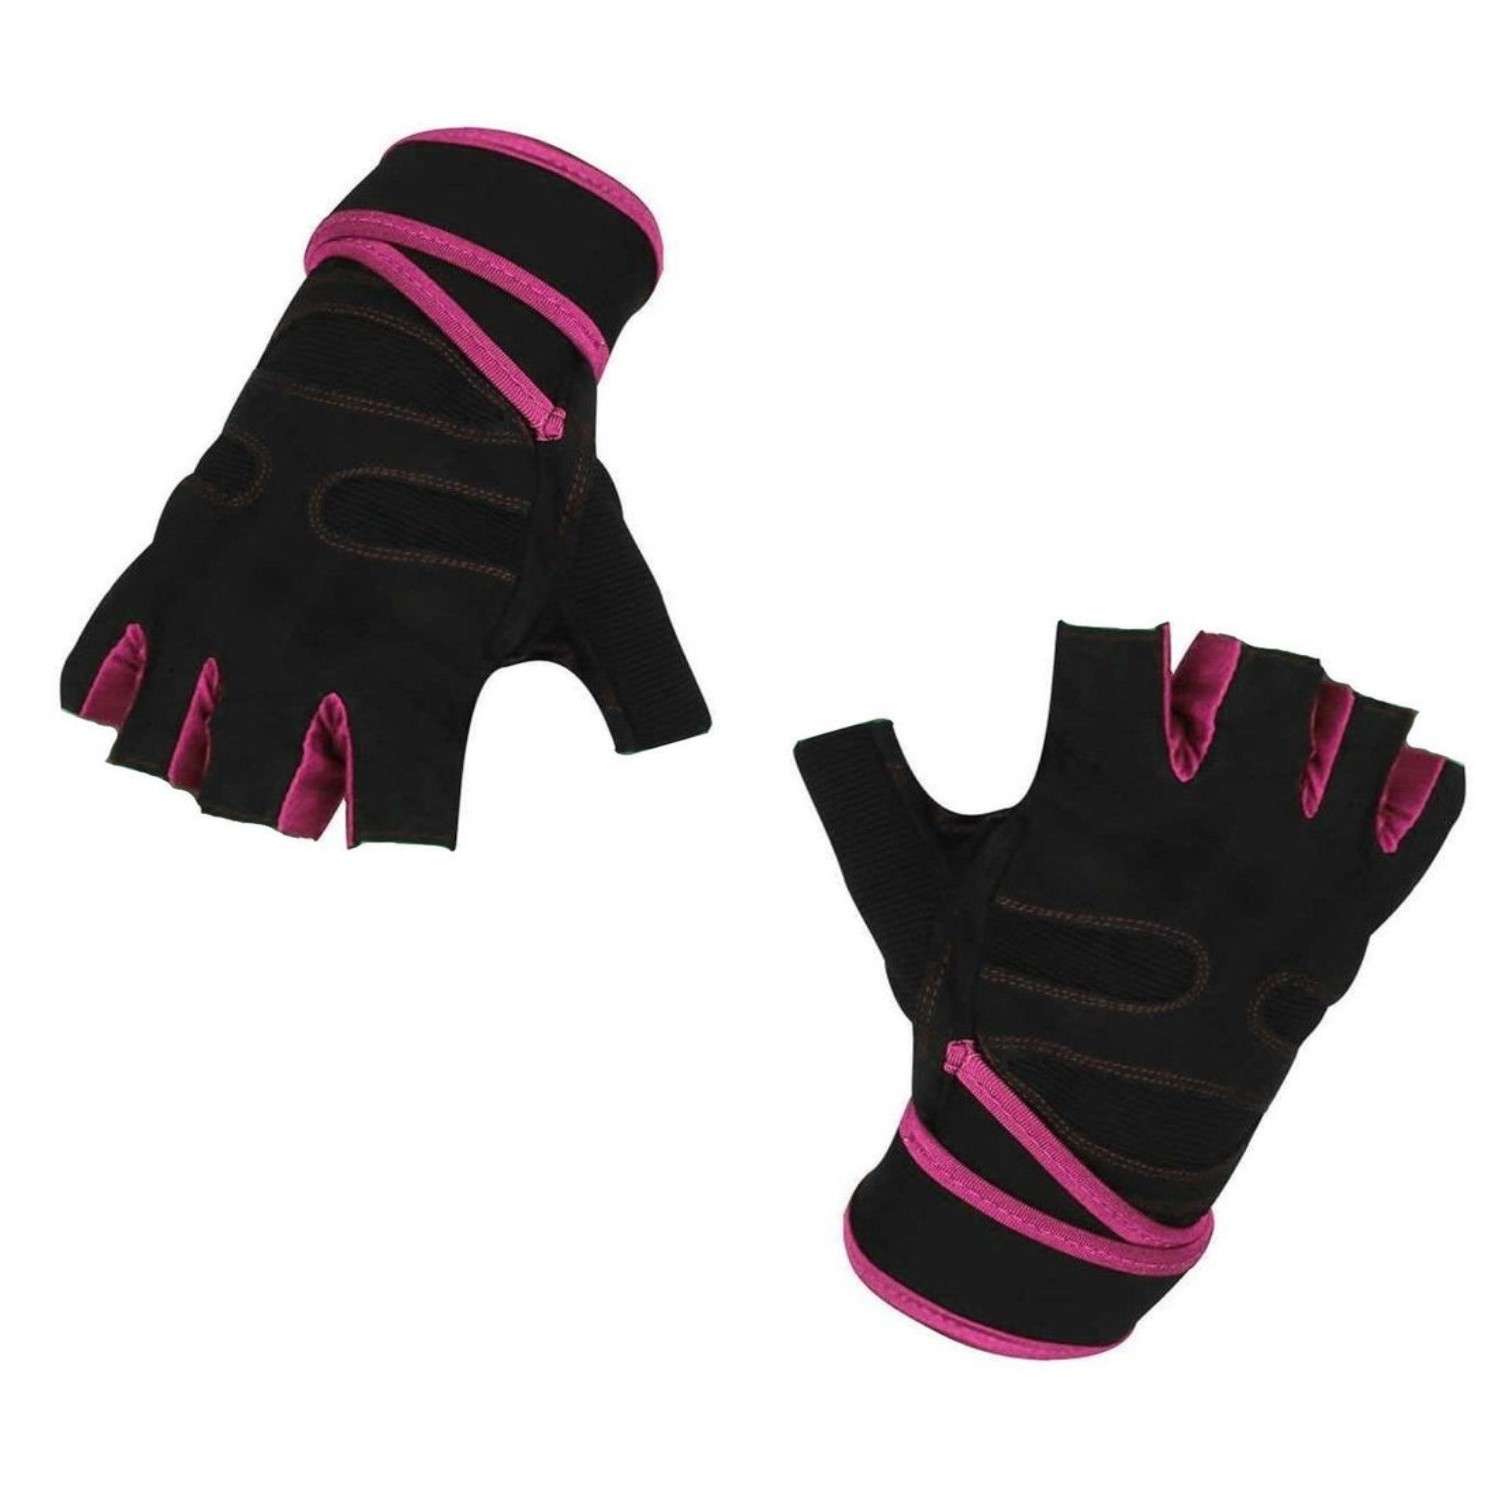 Нейлоновые перчатки NPOSS противоскользящие розовые размер XL - фото 1